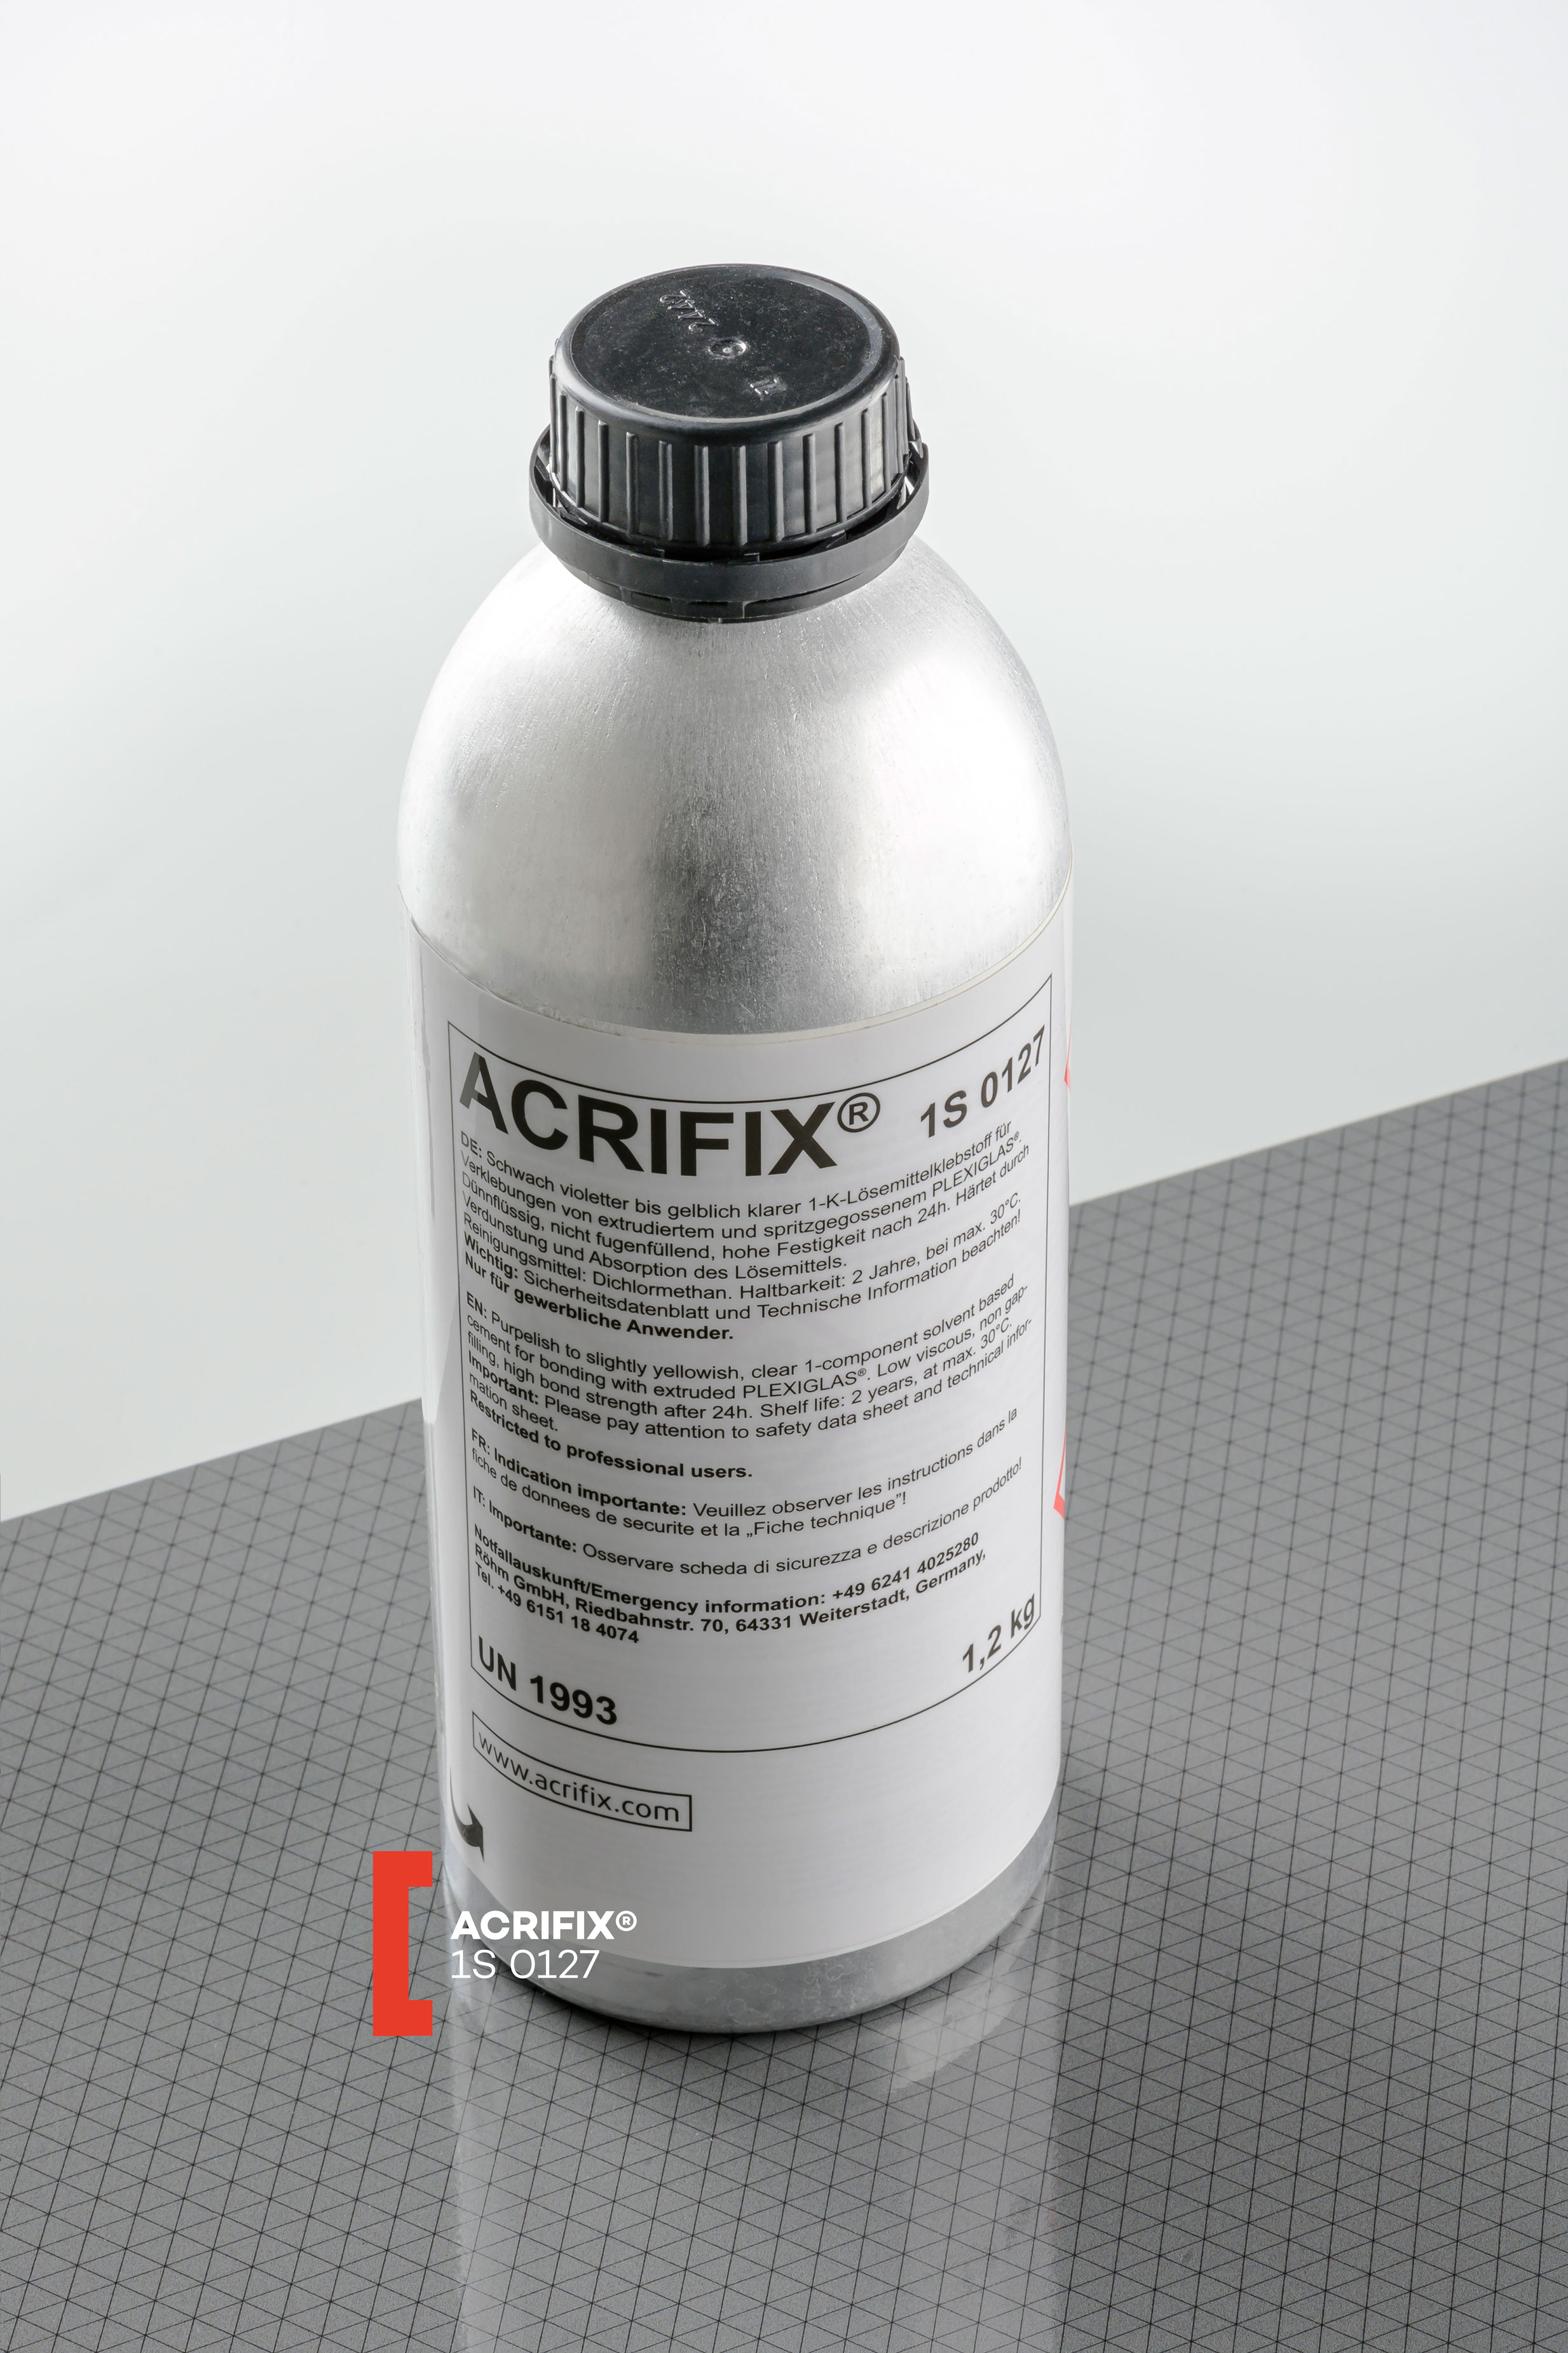 ACRIFIX® 1 S 0127 Kleber Alu-Flasche 1200 g